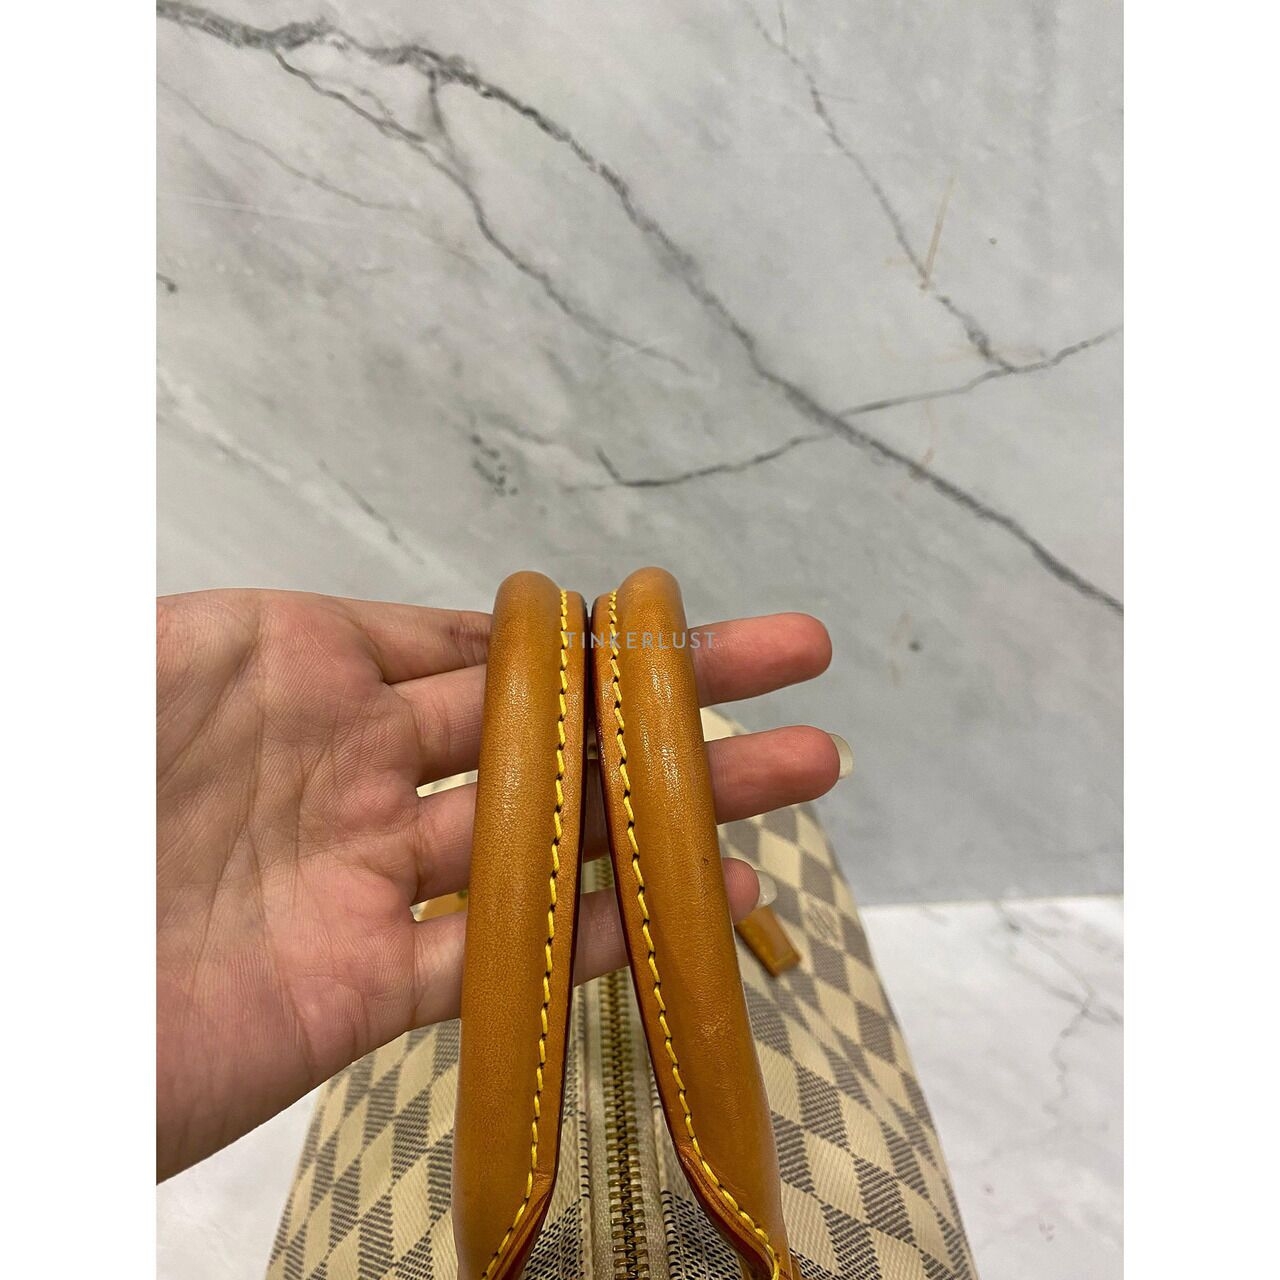 Louis Vuitton Speedy 30 Damier Azur GHW 2014 Handbag